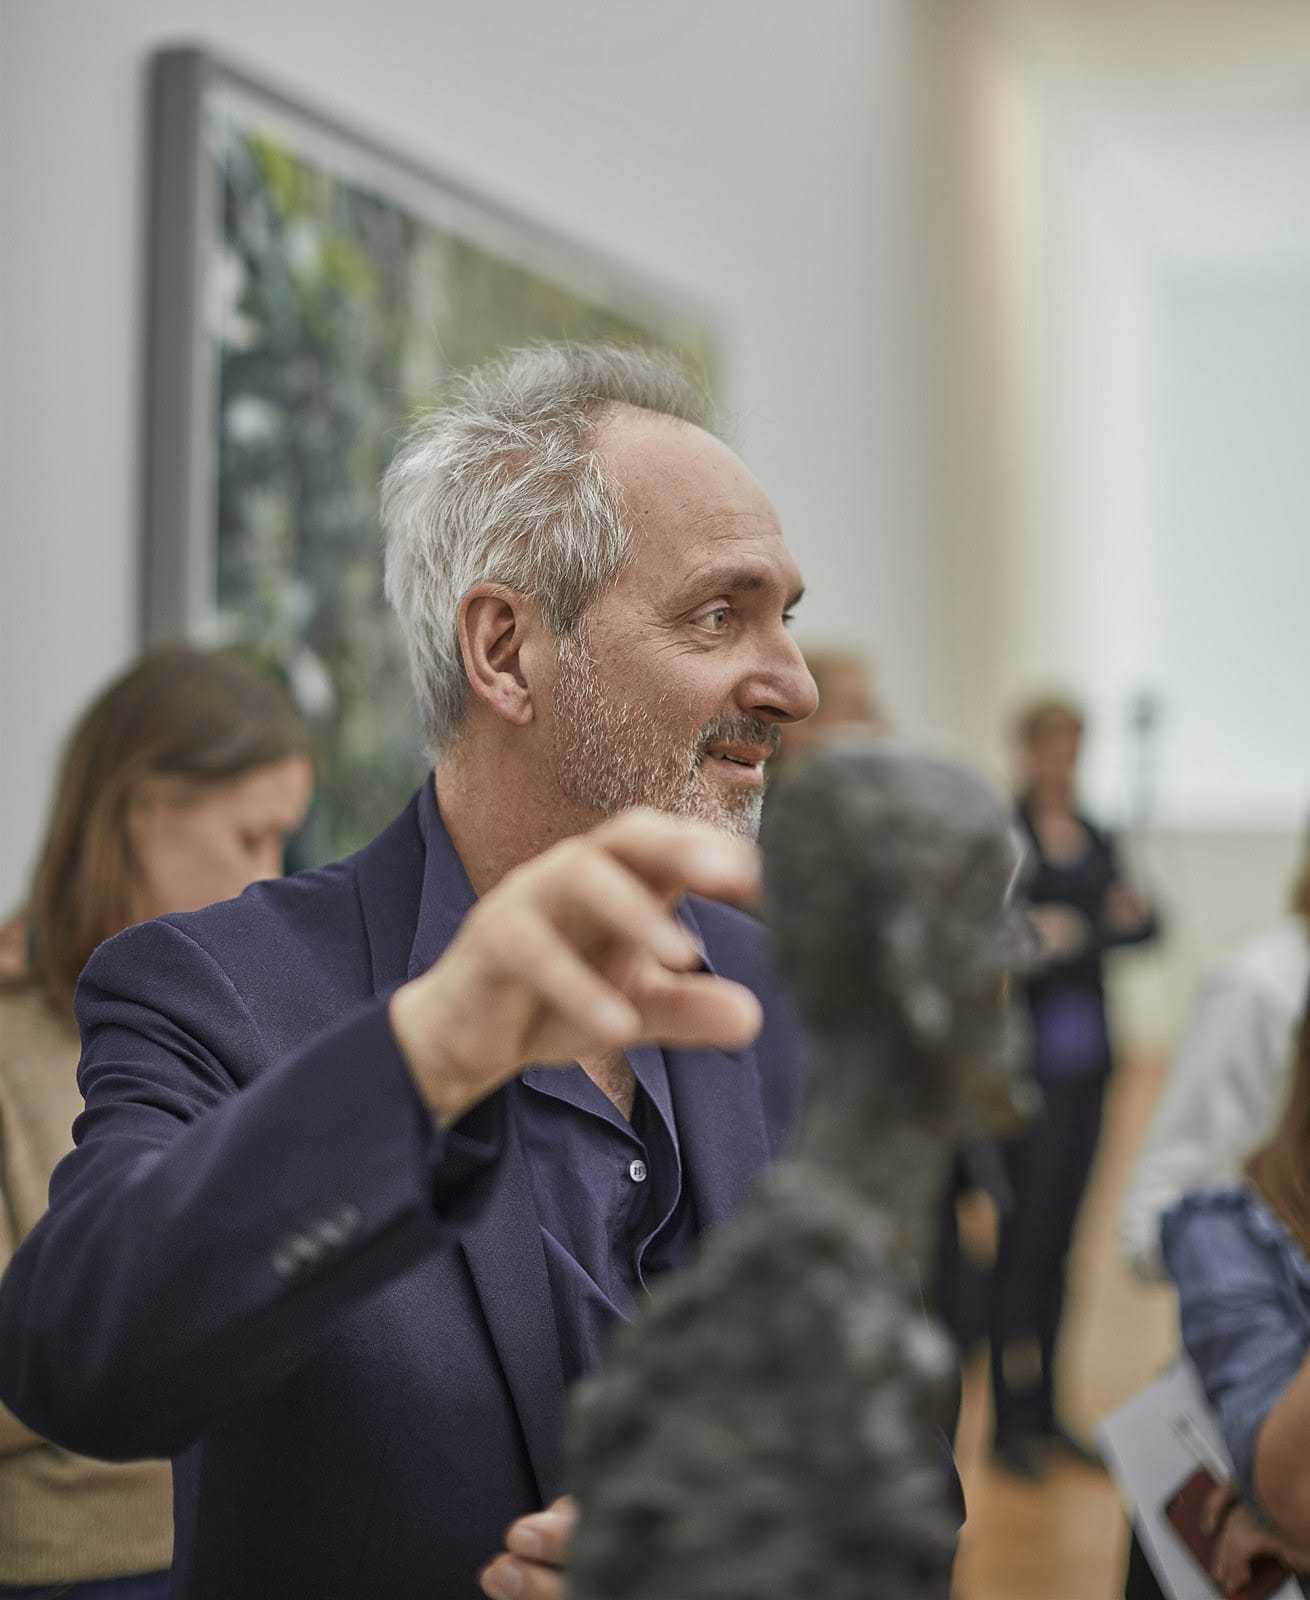 Thomas Struth at the Hilti Art Foundation in Vaduz, Liechtenstein in 2019. Image © Drako Todorovic.